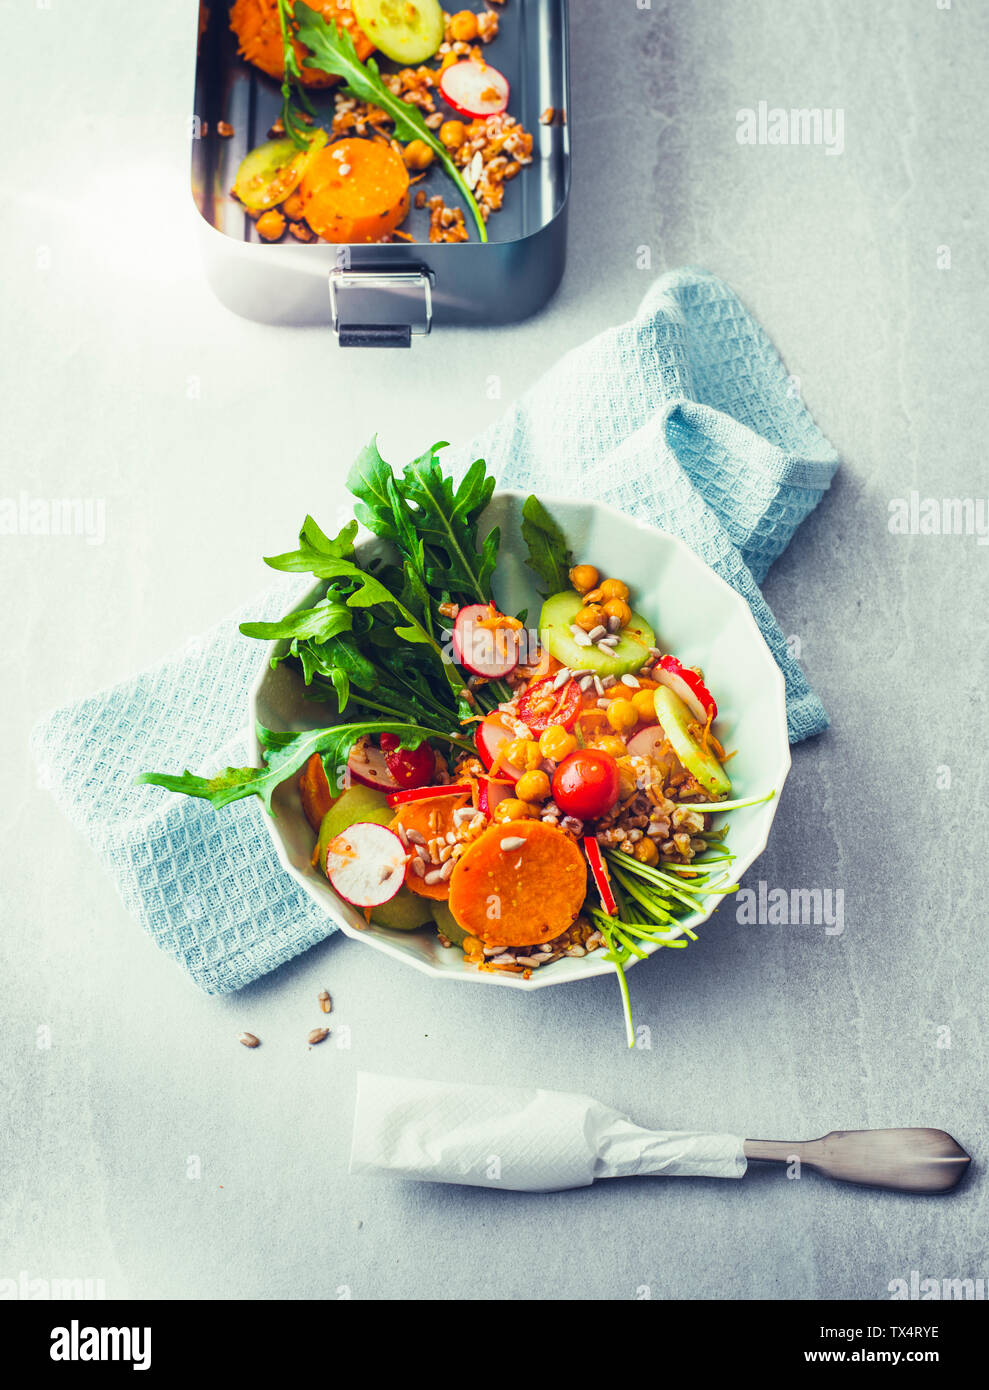 Poke légumes bol avec de l'épeautre, les pois chiches, radis, salade de roquette et patates douces Banque D'Images